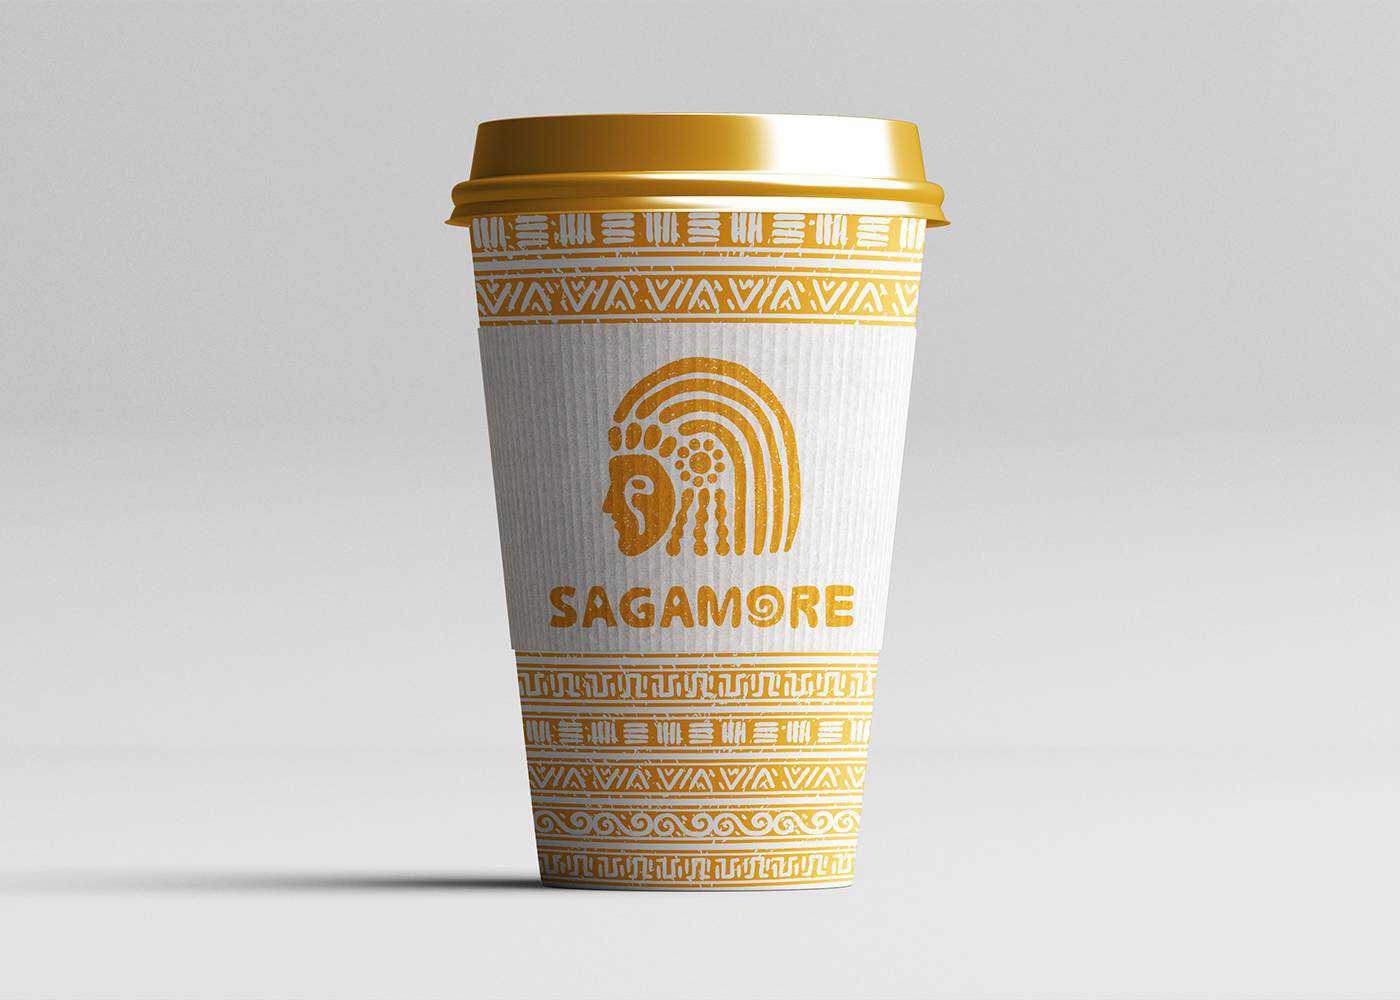 魅力咖啡馆之Sagamore酋长为灵感的咖啡店 3